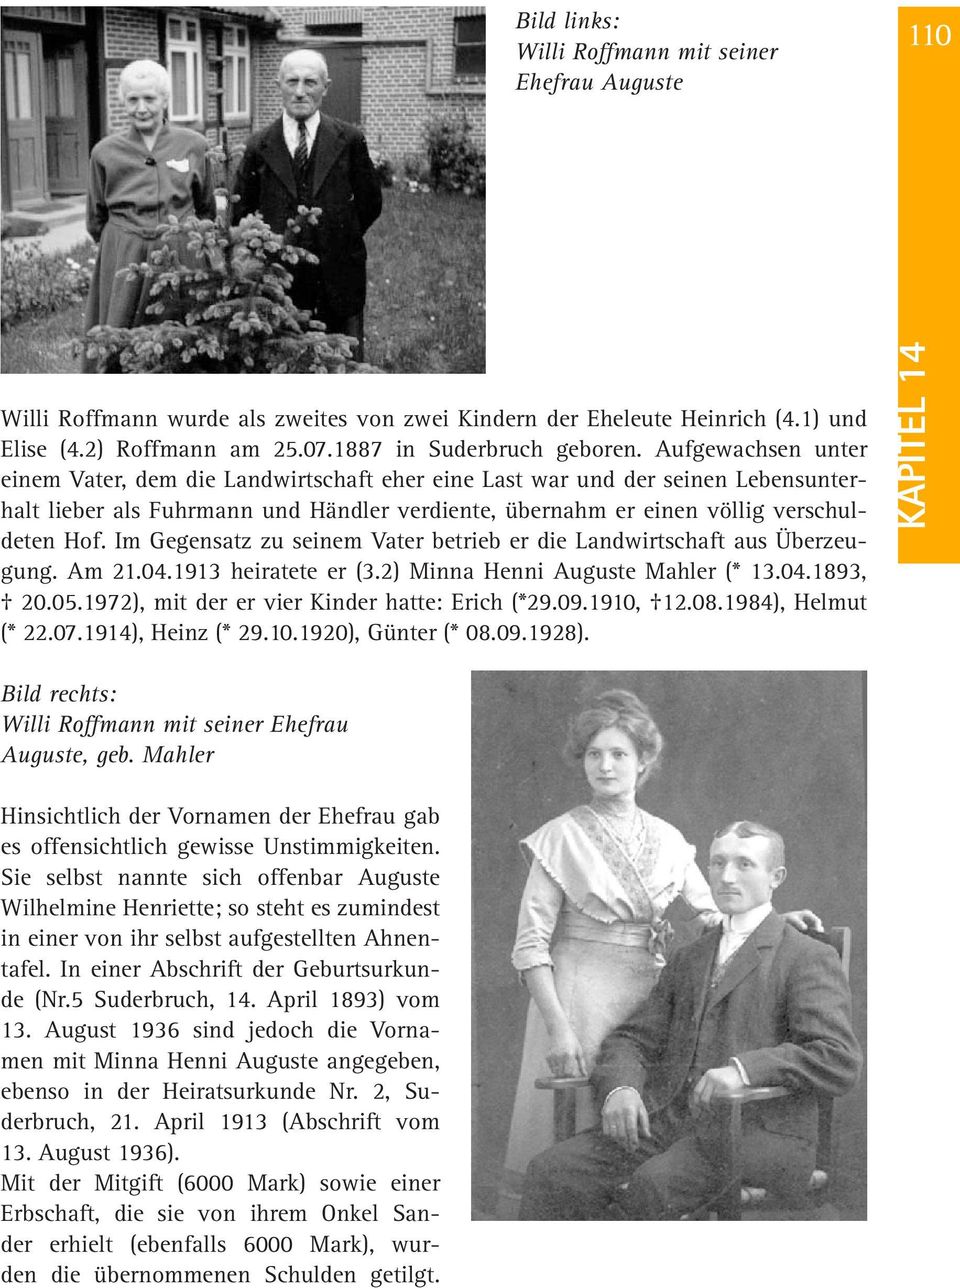 Im Gegensatz zu seinem Vater betrieb er die Landwirtschaft aus Überzeugung. Am 21.04.1913 heiratete er (3.2) Minna Henni Auguste Mahler (* 13.04.1893, 20.05.